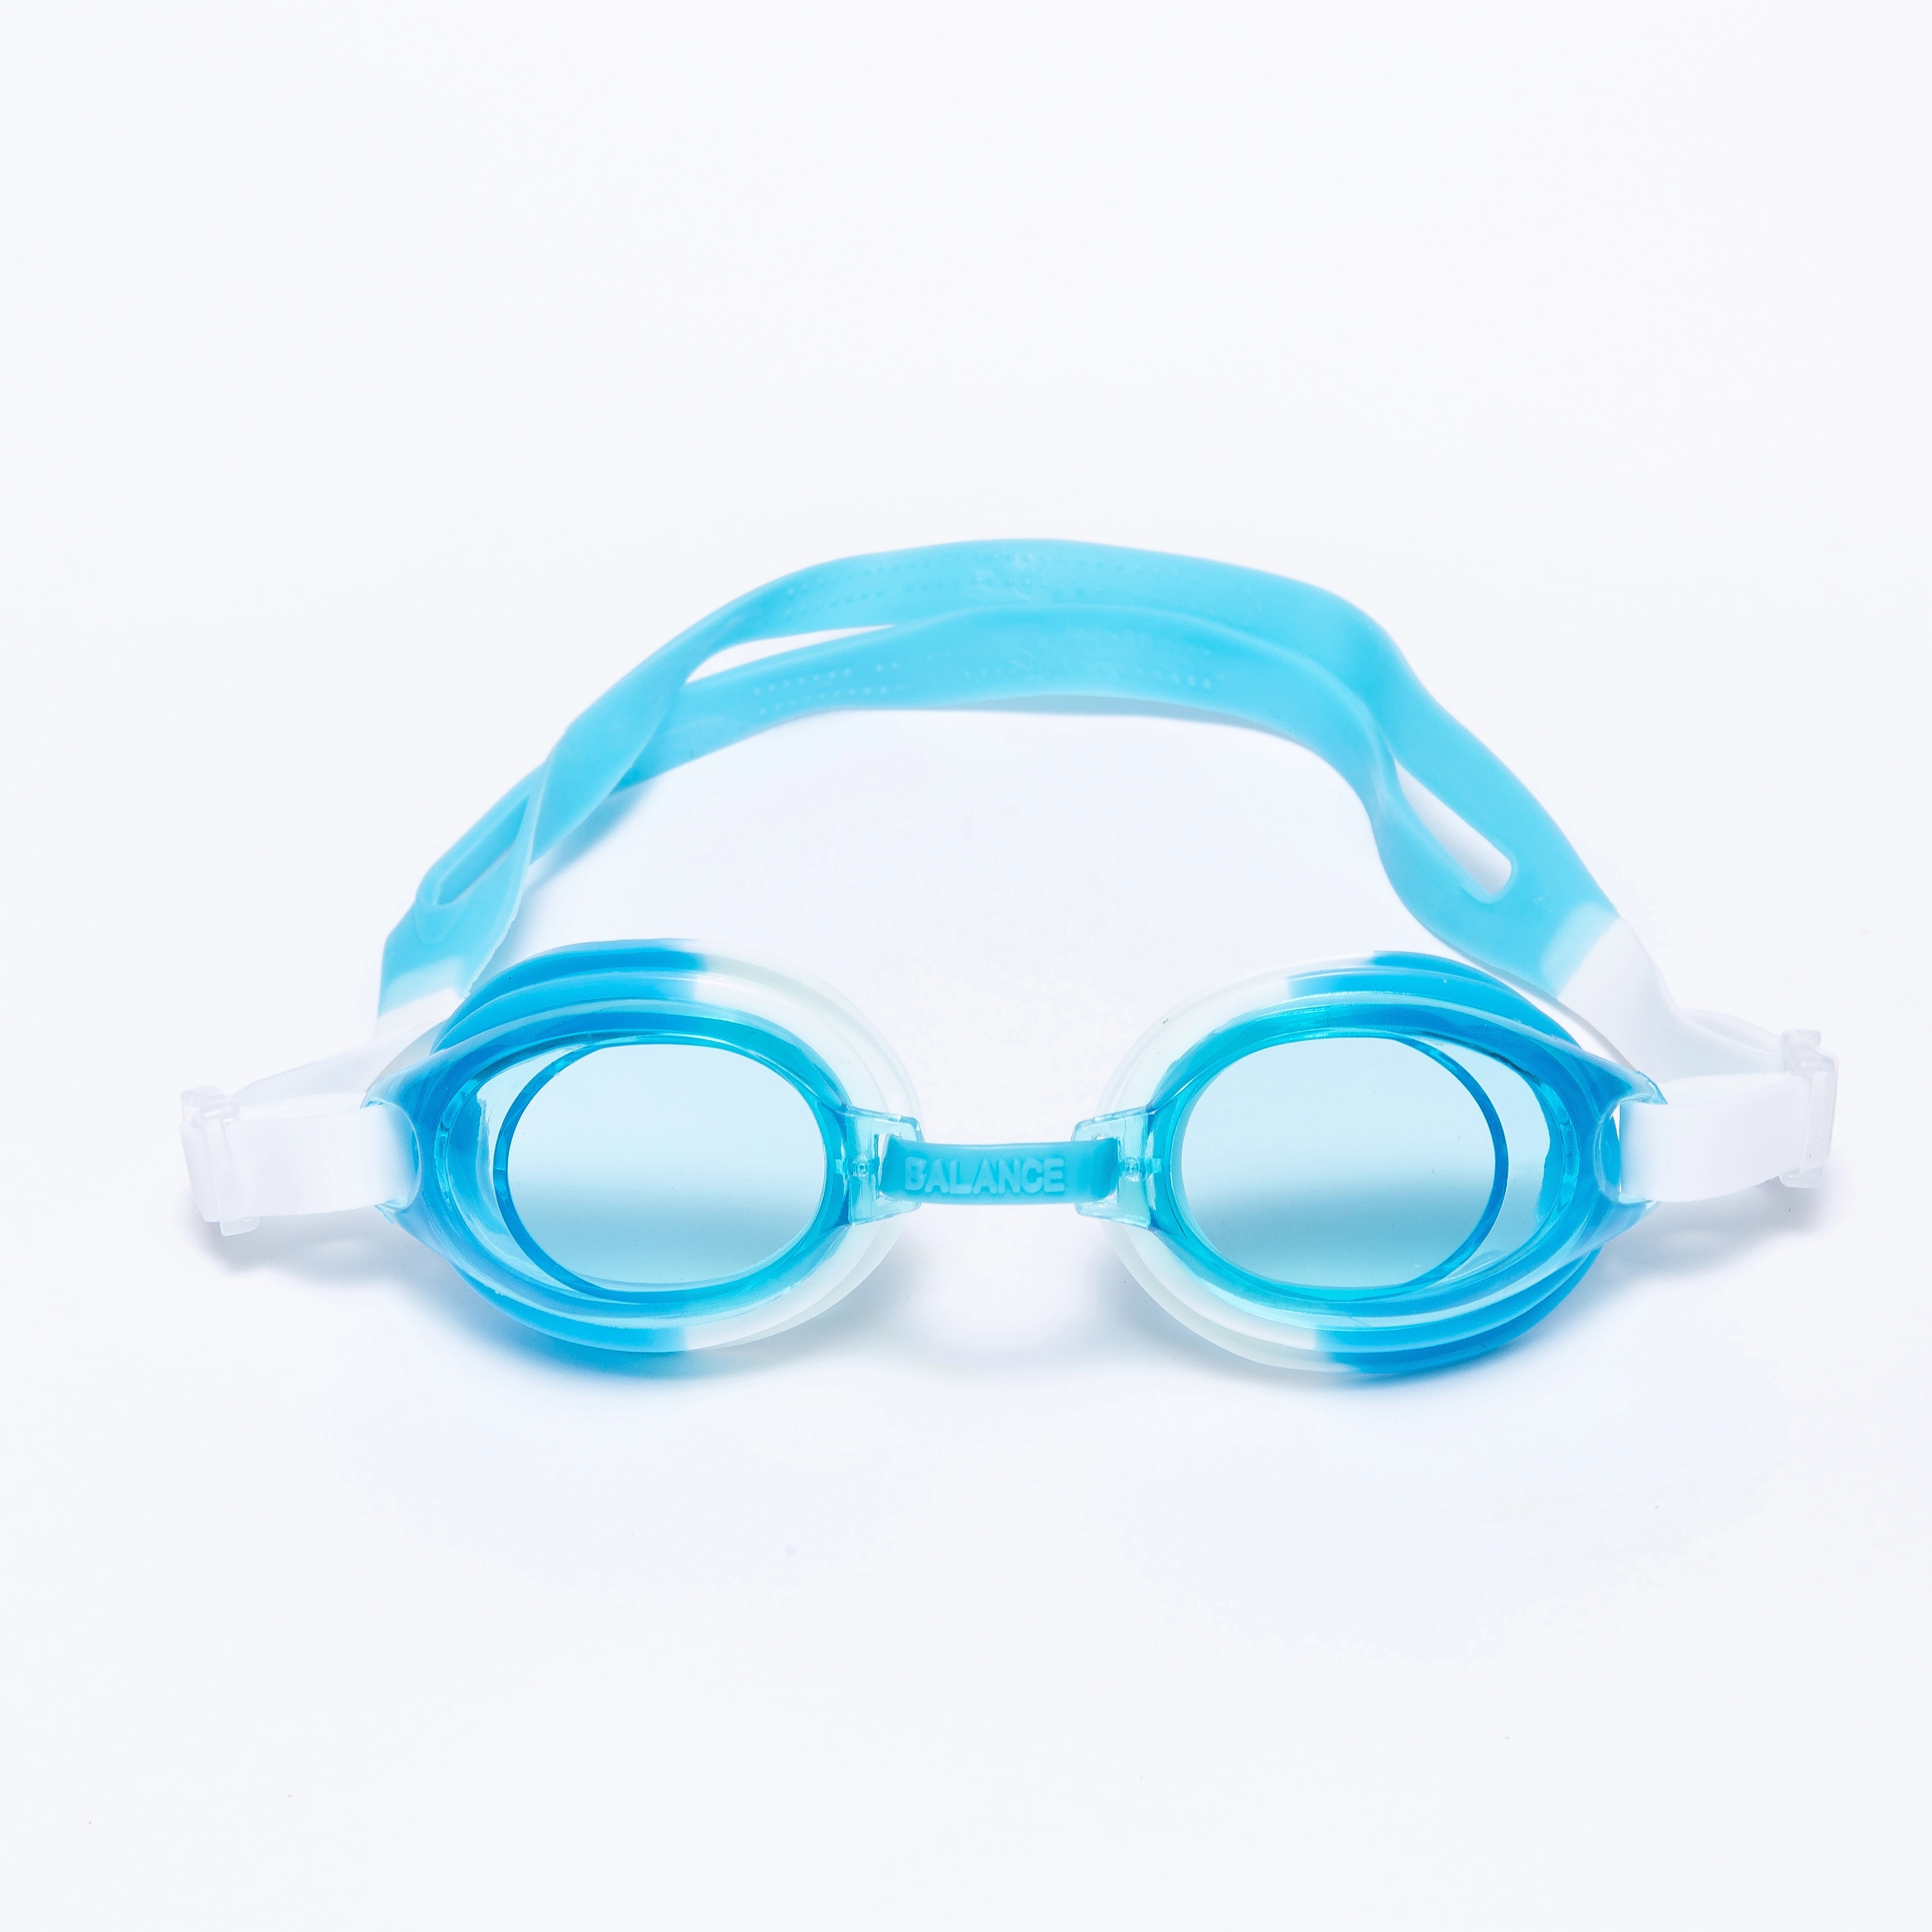 糖果色儿童游泳眼镜潜水镜盒装可爱透明泳镜儿童详情图1